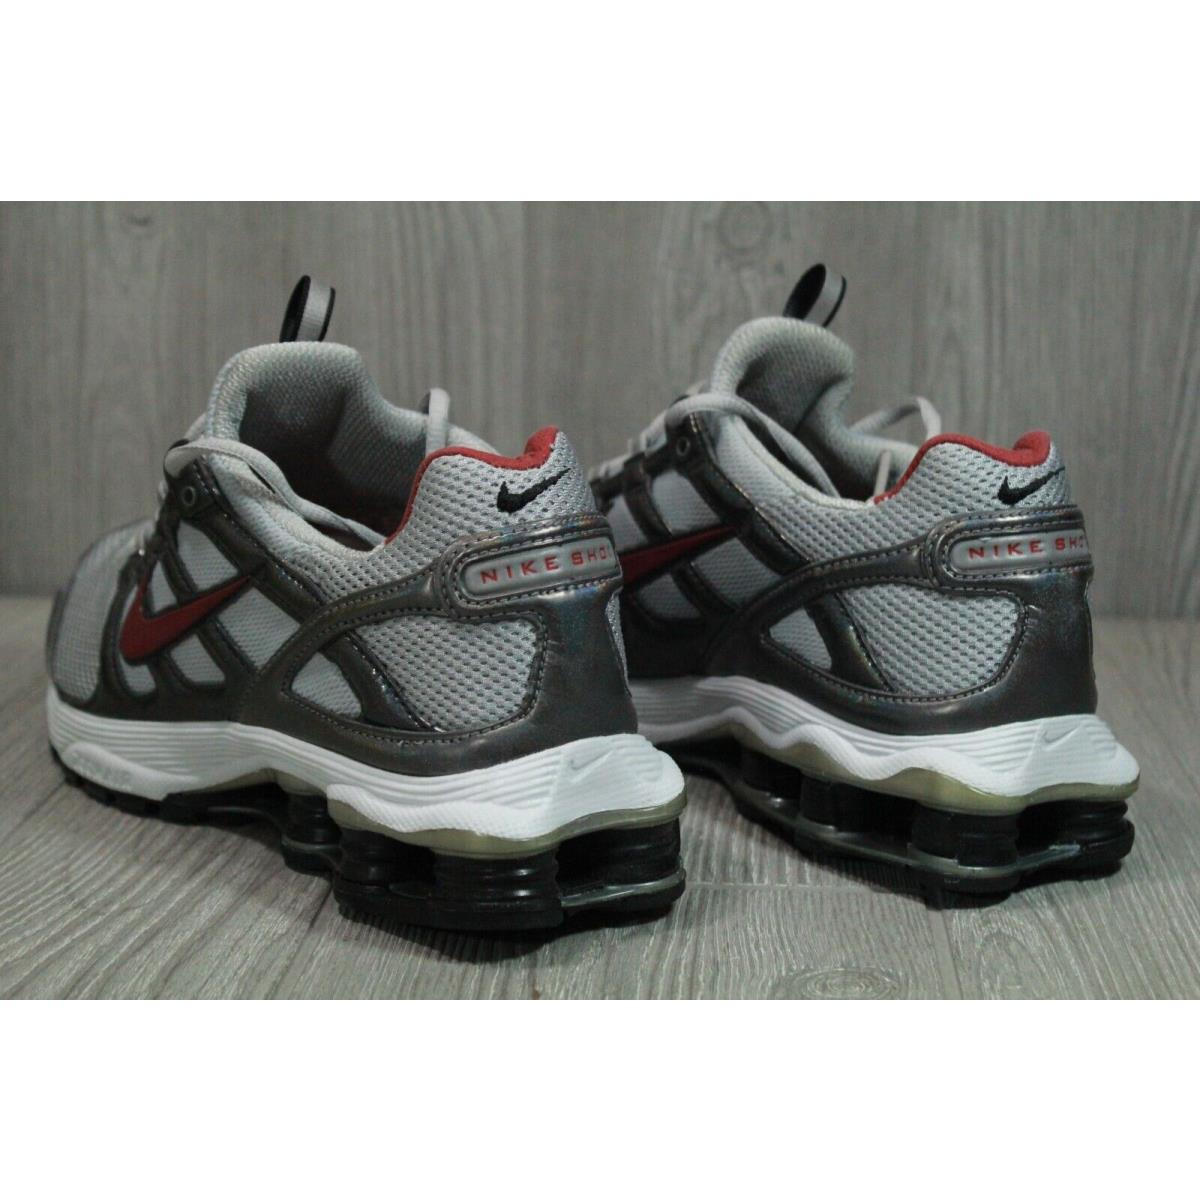 Nike shoes Shox - grey 2